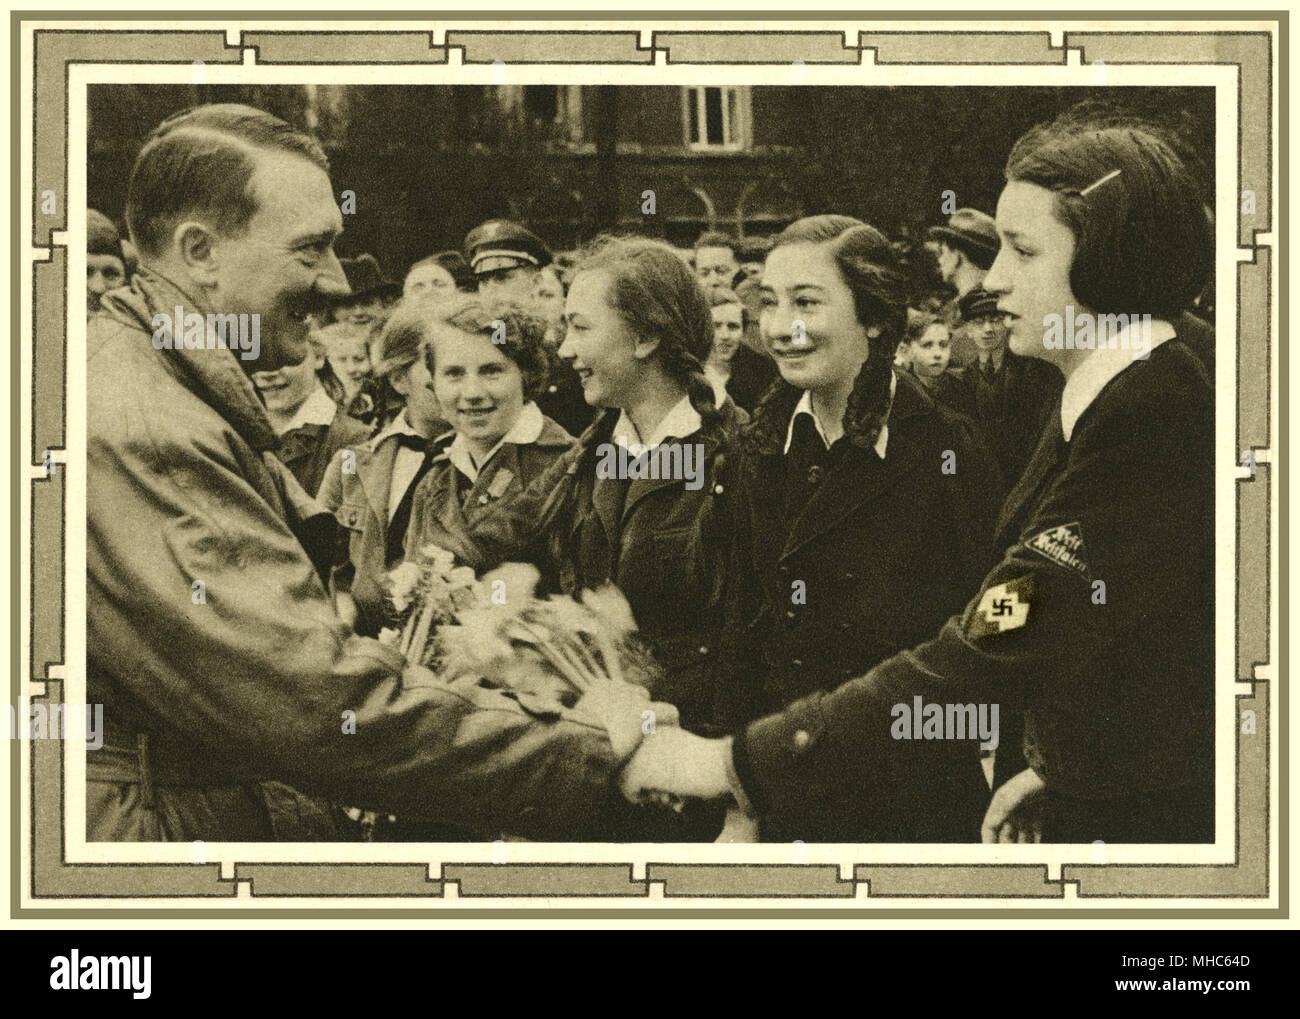 La SEGUNDA GUERRA MUNDIAL 1939 Alemania, Adolf Hitler, Führer reunión impresionables adolescentes, el grupo líder en primer plano, luciendo una esvástica y rank badge, entra a formar parte de la "banda alemana de doncellas ' (Bund Deutscher Mädel / aleta BDM) de la organización juvenil del Partido Nazi de Hitler Foto de stock